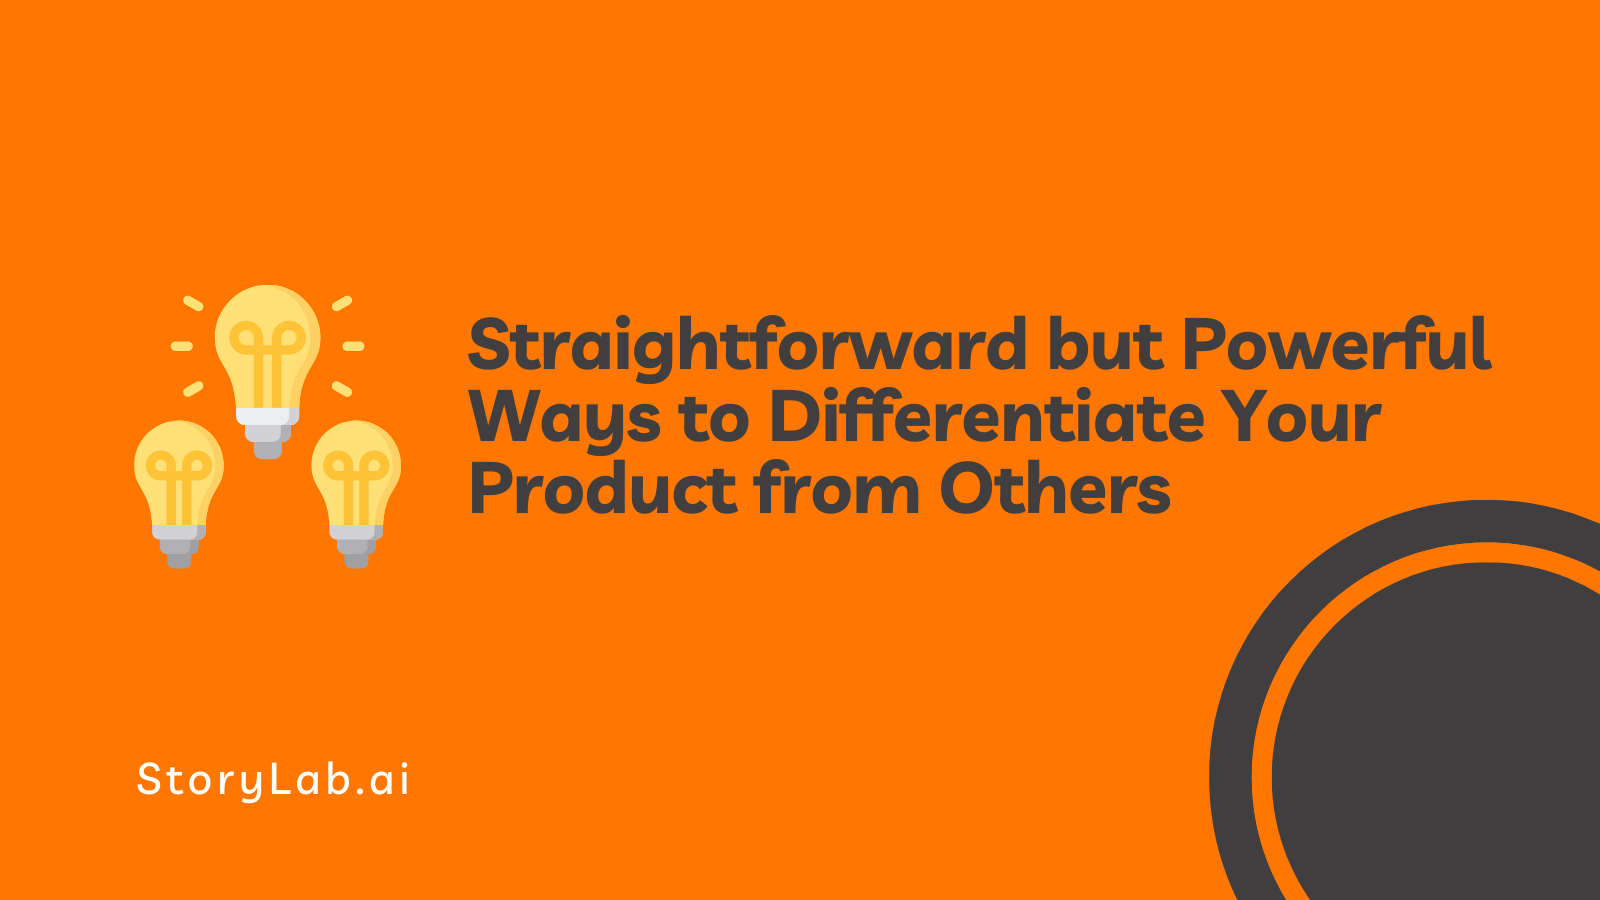 Formas sencillas pero potentes de diferenciar su producto de los demás